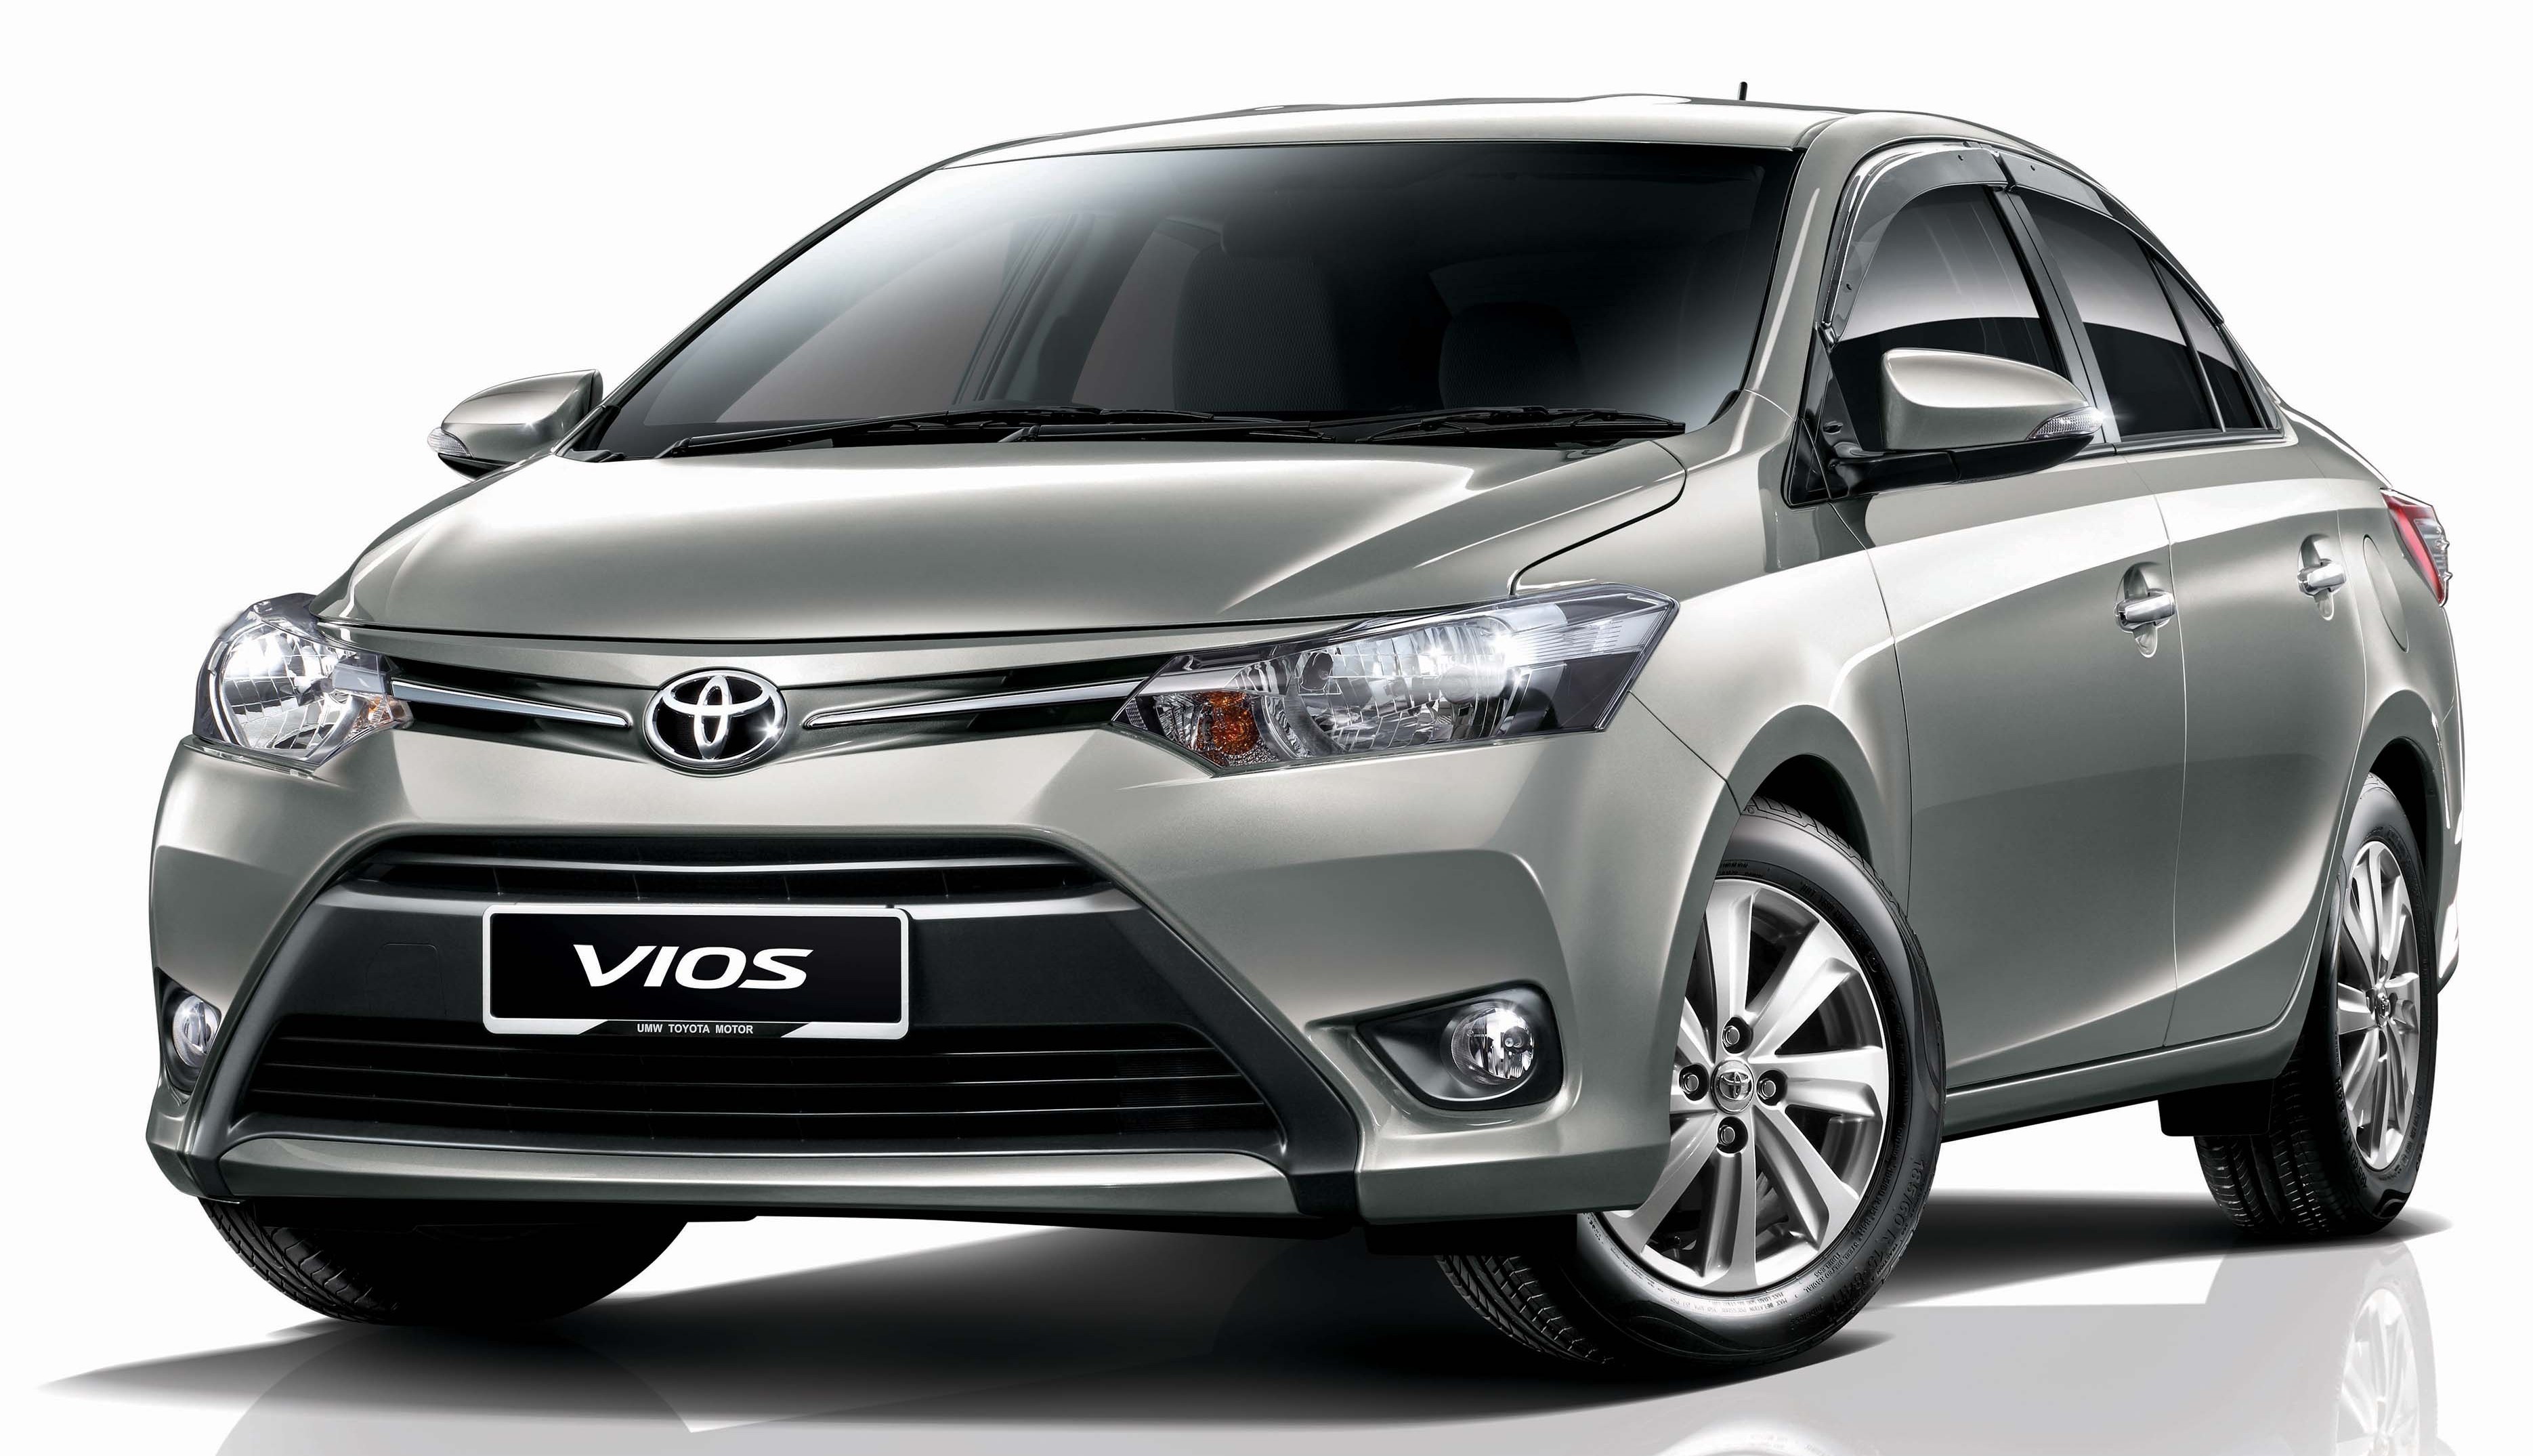 1. Đứng ở vị trí thứ nhất là Toyota Vios khi lập kỷ lục bán 2.148 xe, tăng 82% so với cùng kỳ năm 2015. Cộng dồn 10 tháng, doanh số của Vios đạt 12.983 xe, tăng 16% so với cùng kỳ. Hiện Vios có 4 phiên bản, sử dụng 2 loại động cơ 1.5L và 1.3 L với giá từ 532 -622 triệu đồng.